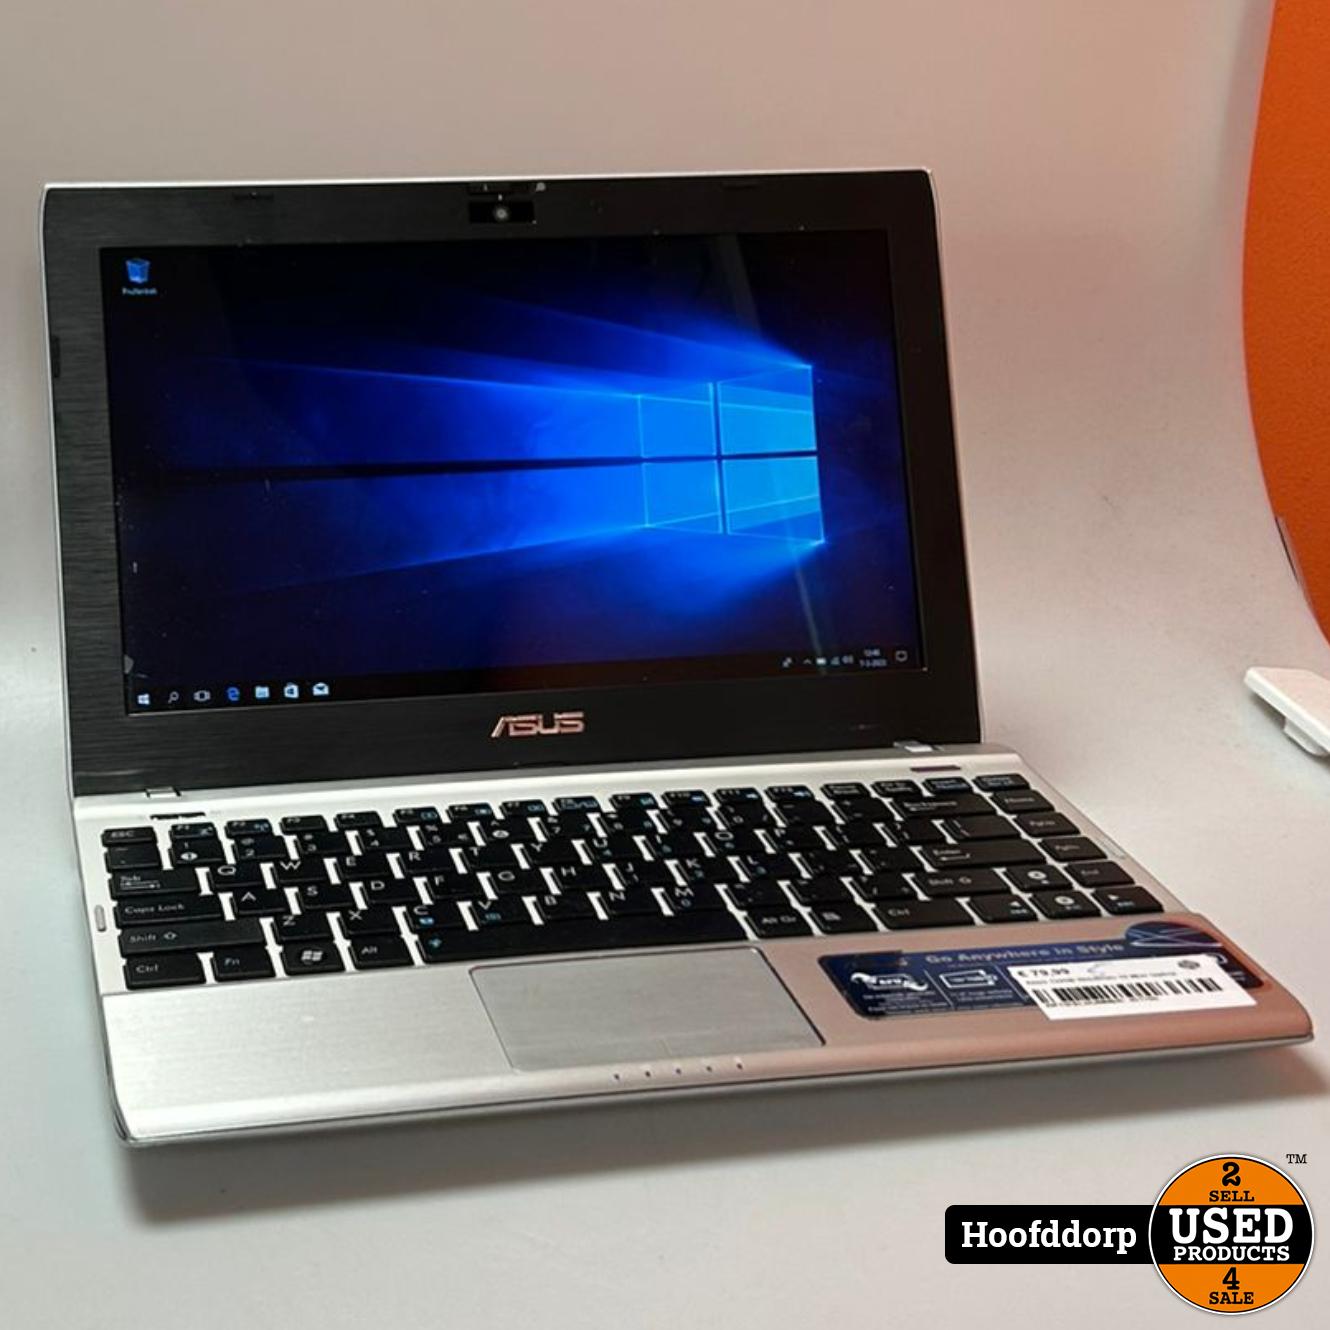 bank Hoop van Scenario Asus 1225B Windows 10 Mini laptop - Used Products Hoofddorp